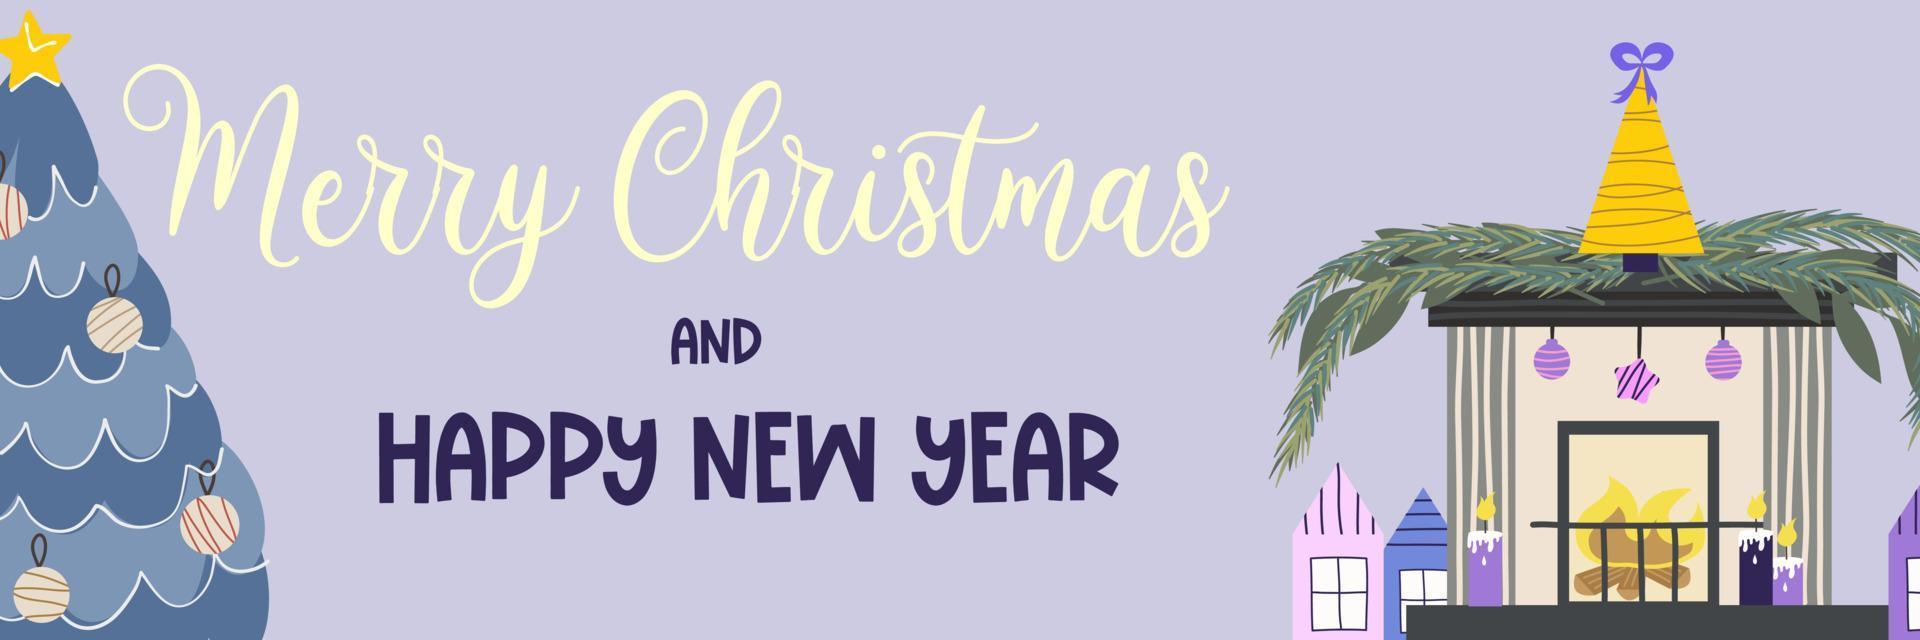 banner de Natal com texto feliz Natal e lareira com texto spruce.light azul sobre um fundo roxo, lareira com fogo, árvore, guirlanda, meias. ilustração em vetor de banner vertical festivo.